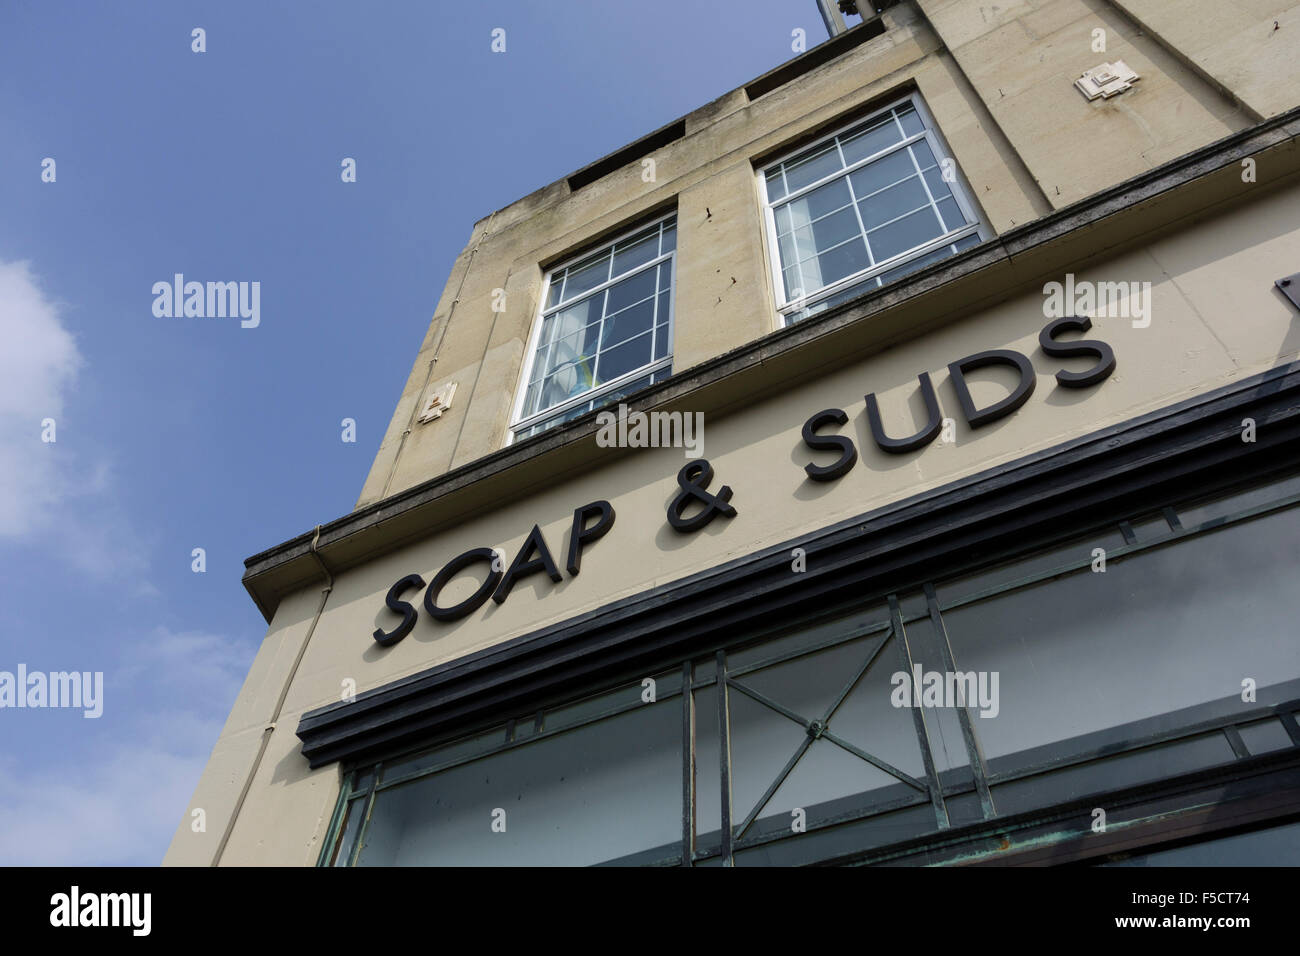 Soap & Suds laundrette, Stroud, Gloucestershire, UK Stock Photo